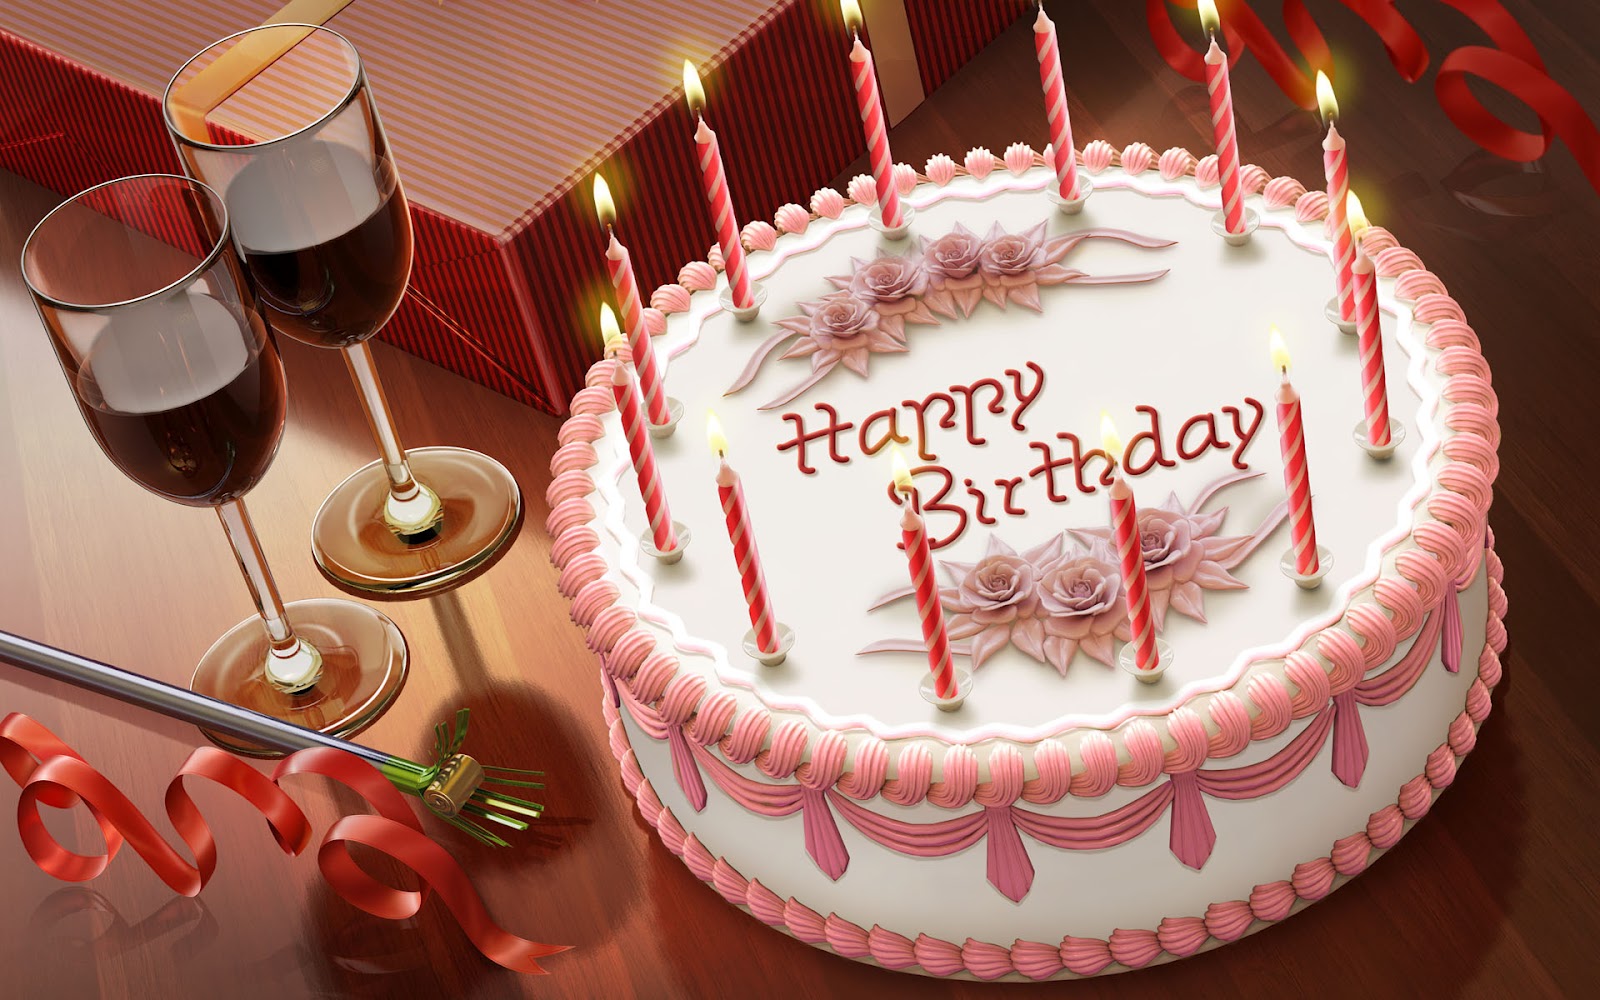 http://2.bp.blogspot.com/-vkriXam4Ab4/T5OEBgN2vtI/AAAAAAAAA6A/RzwmzAOhBMg/s1600/Happy-Birthday-Widescreen.jpg